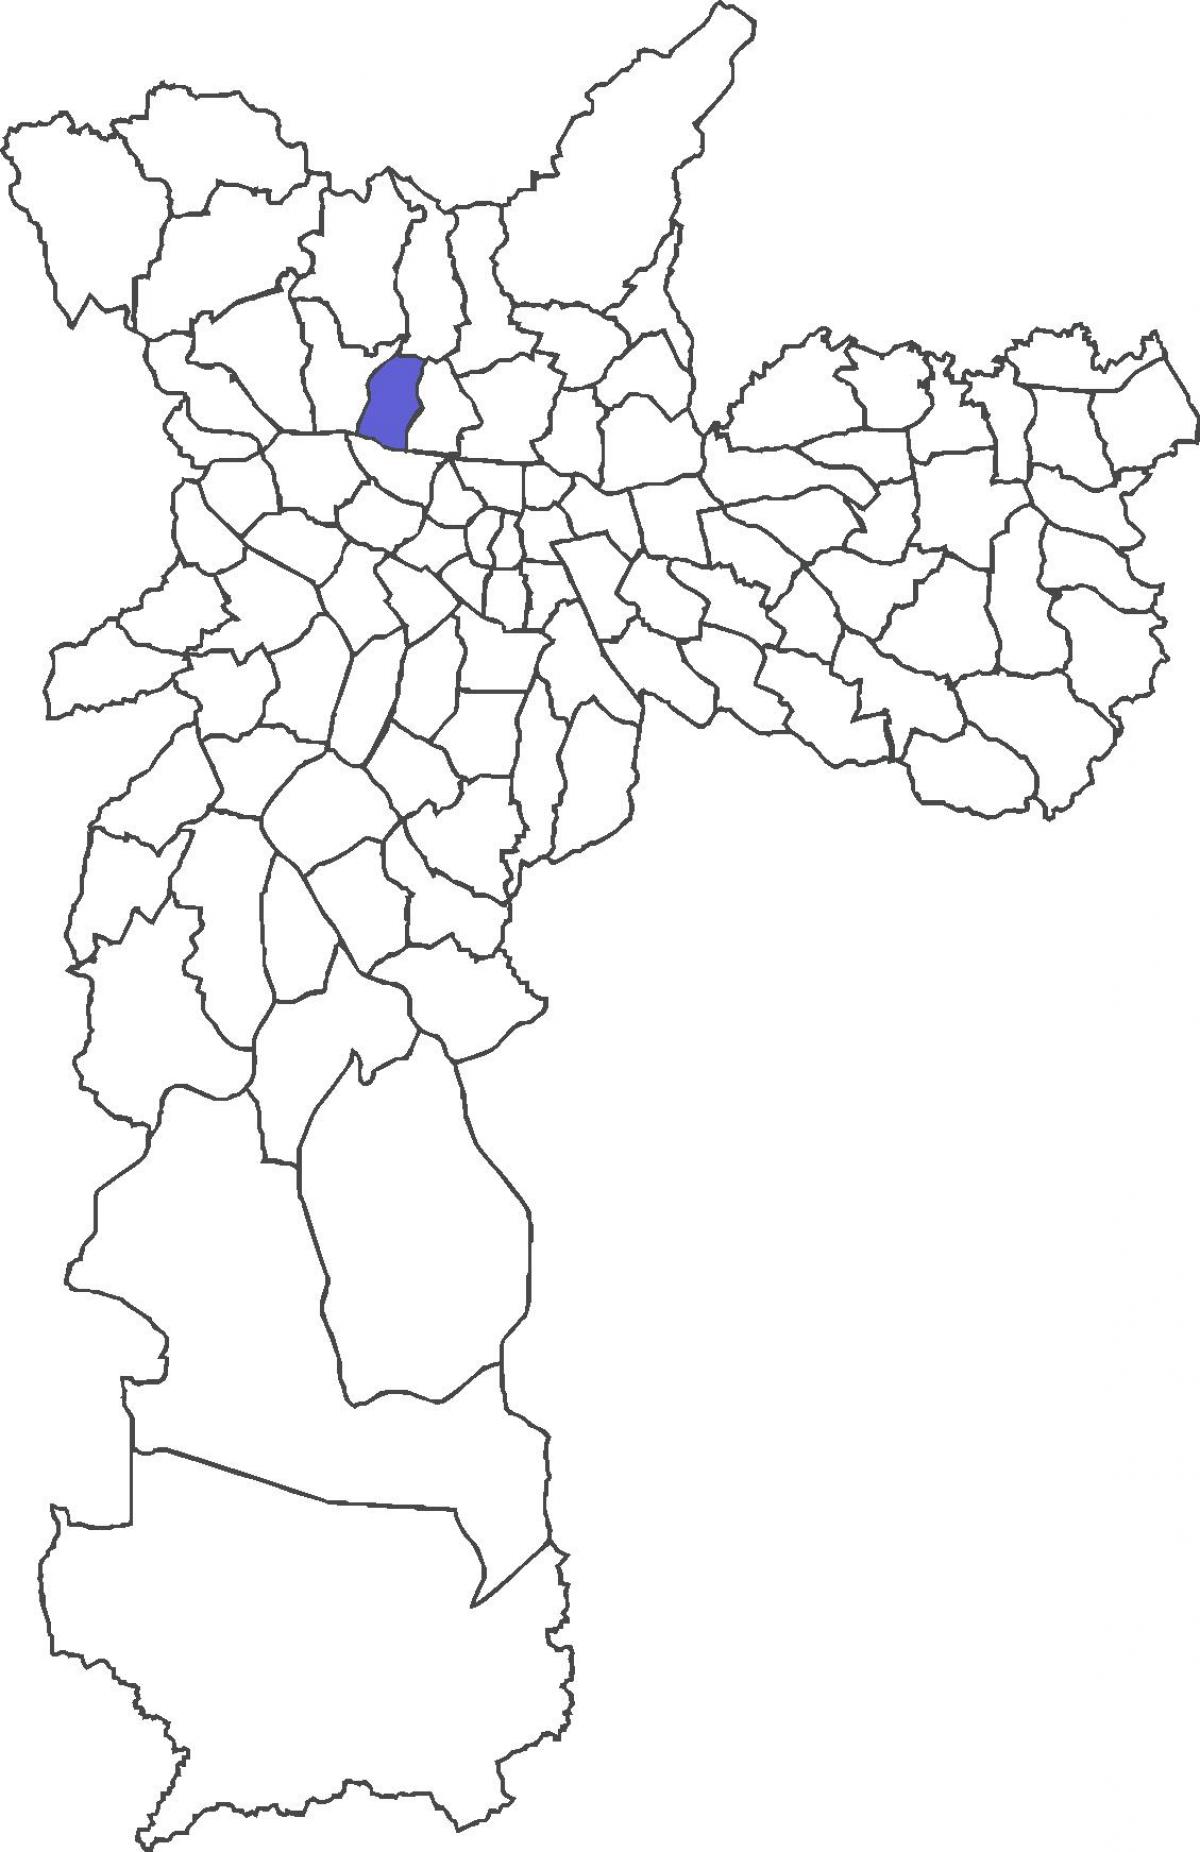 地图Limão区